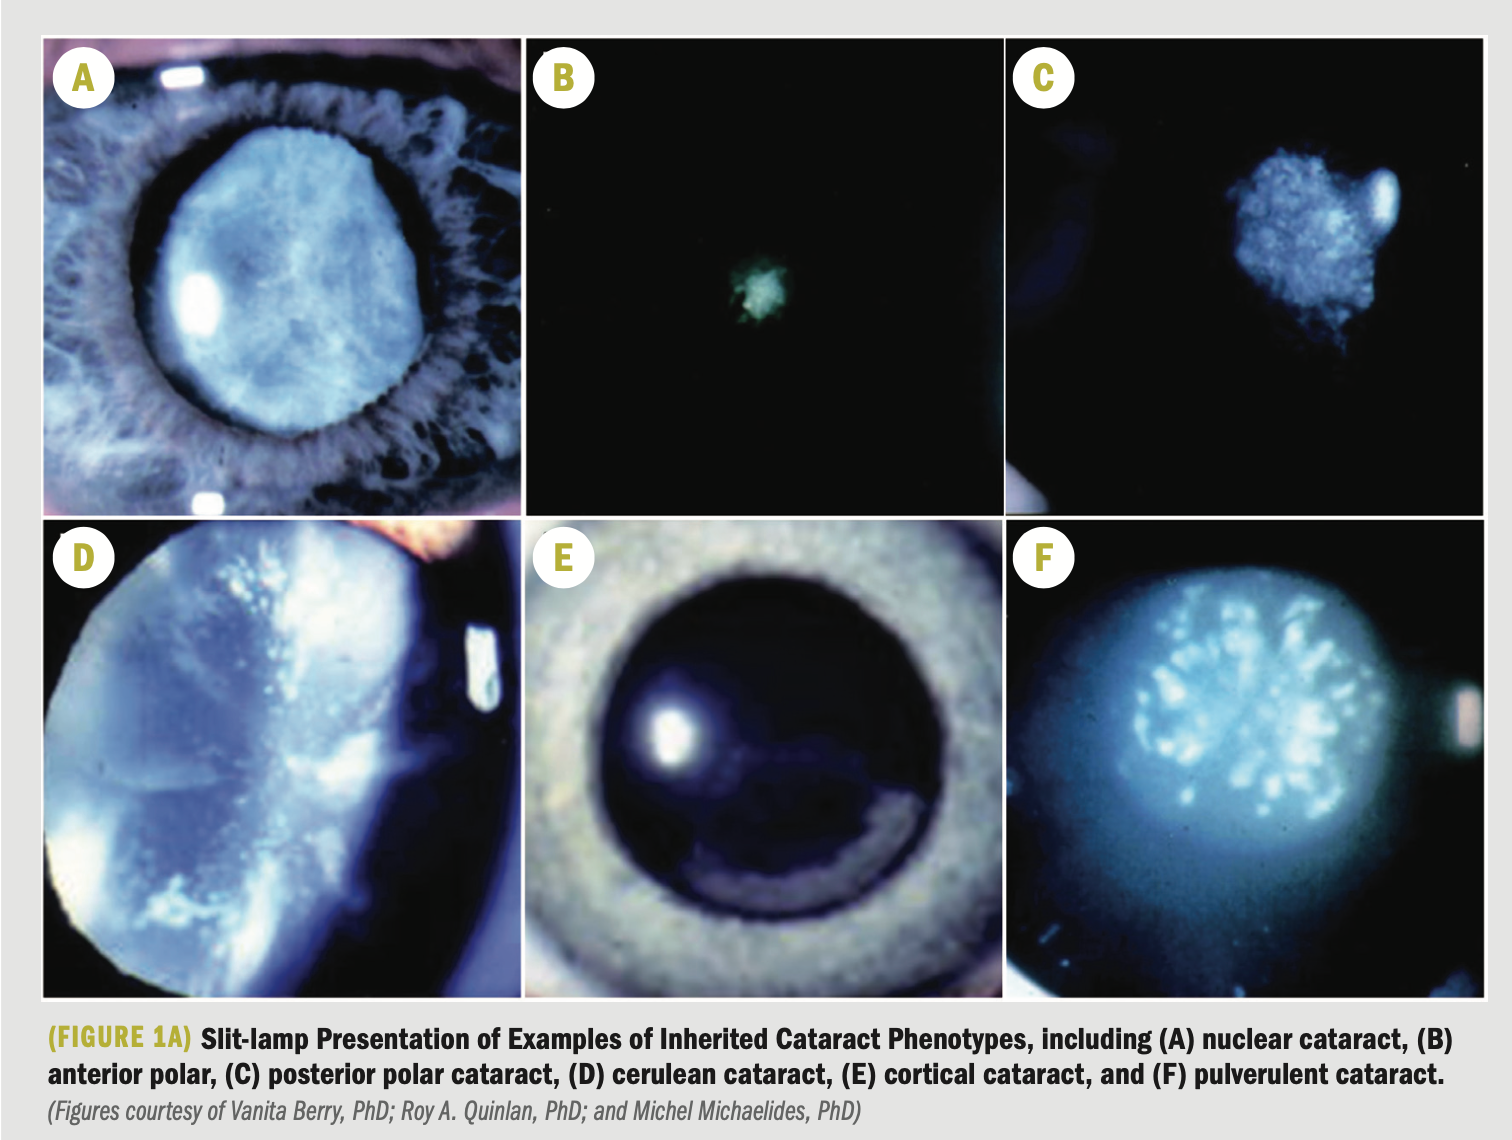 Focus on molecular mechanisms underlying cataract development